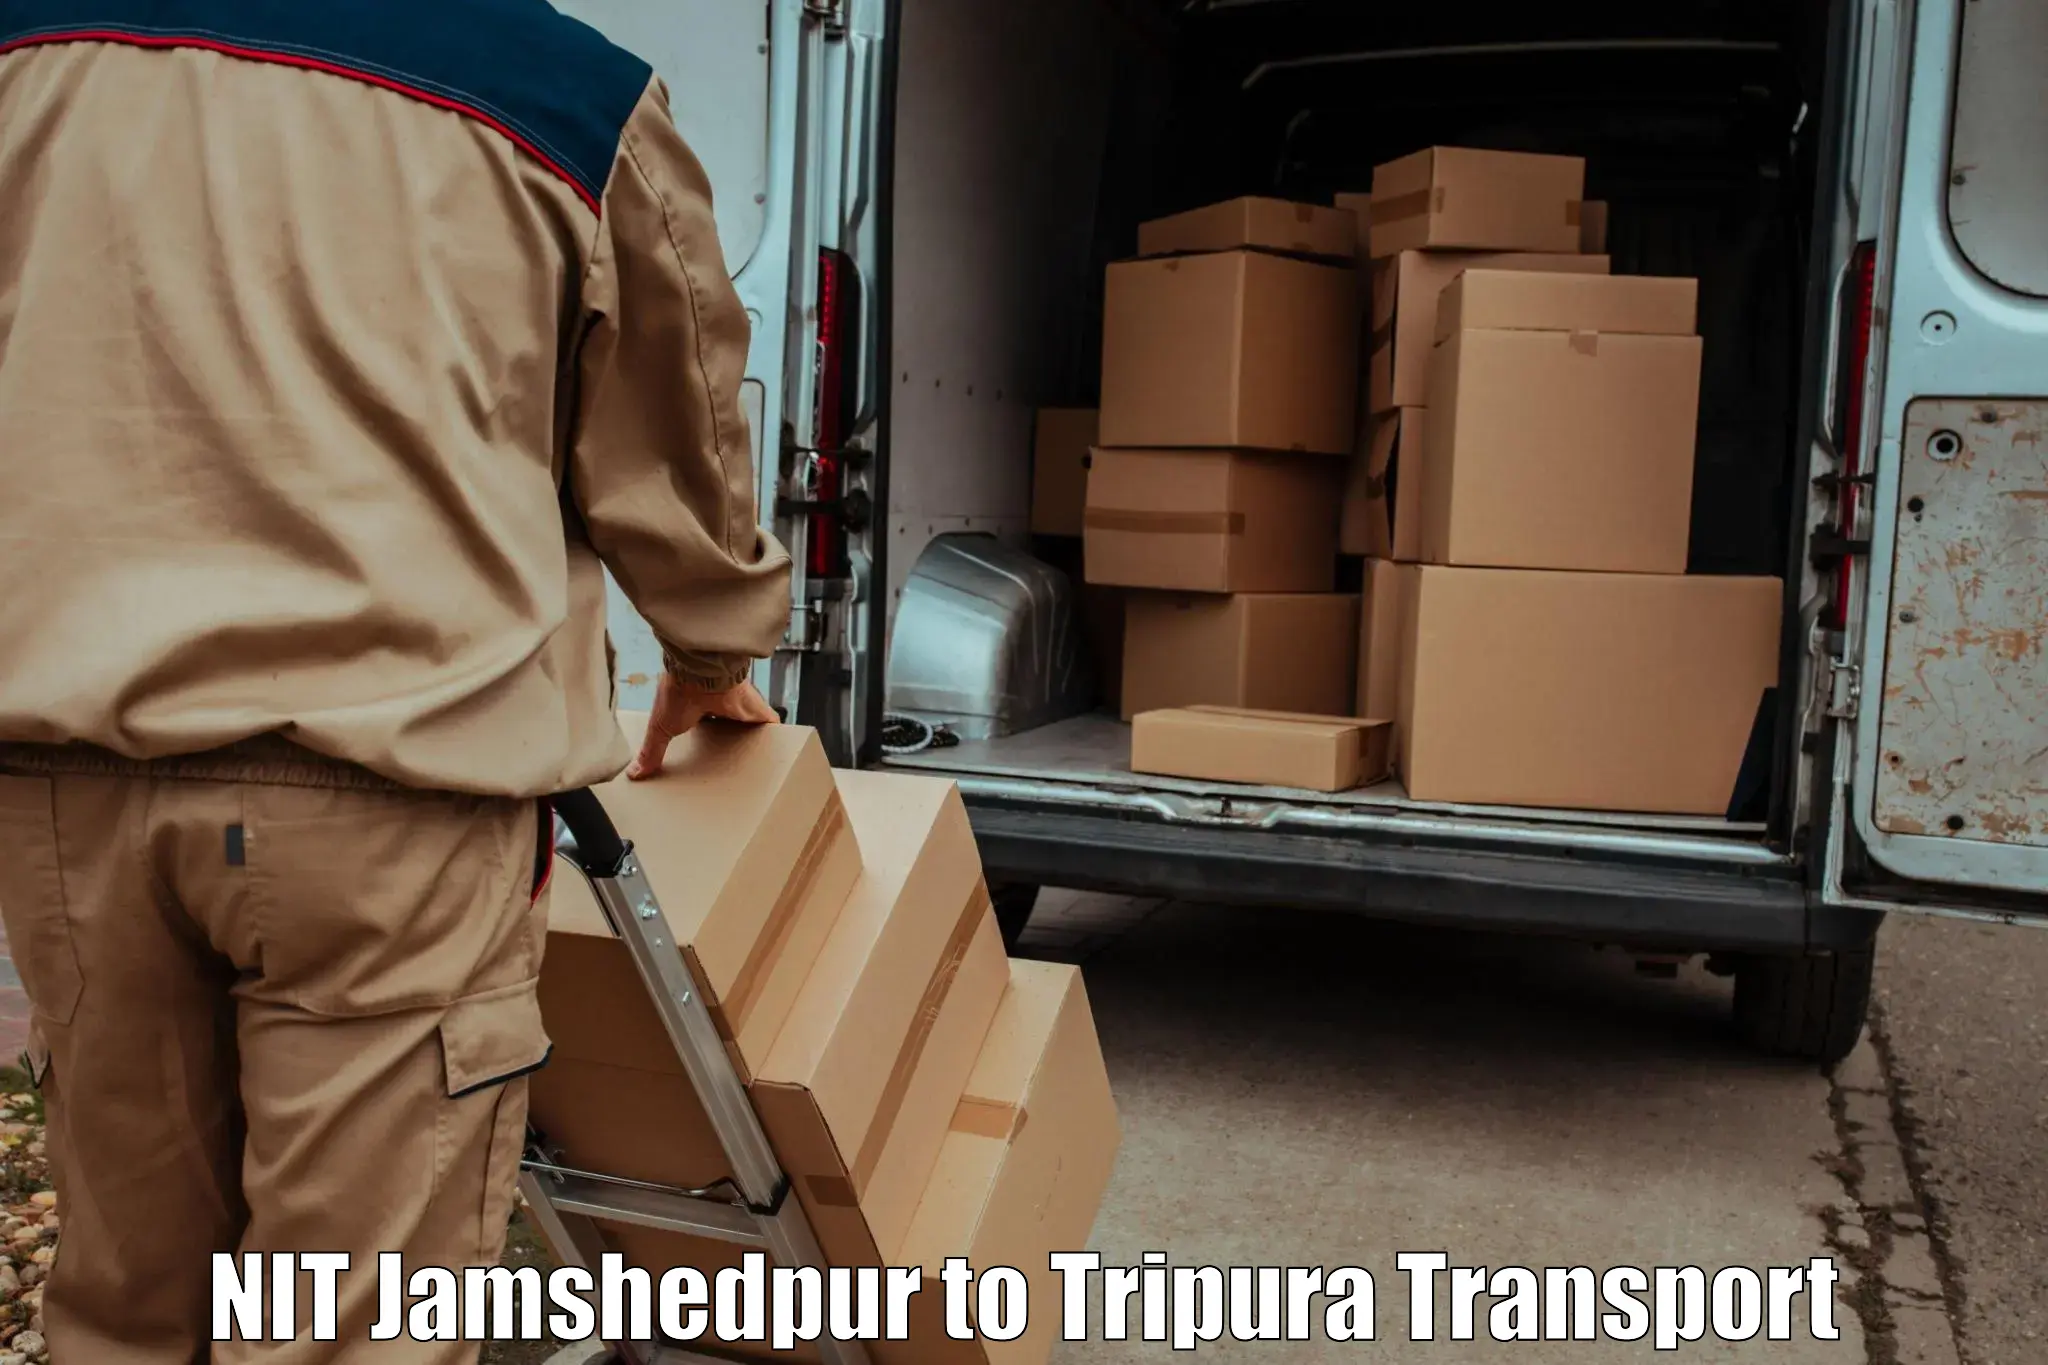 Nearest transport service in NIT Jamshedpur to Sonamura